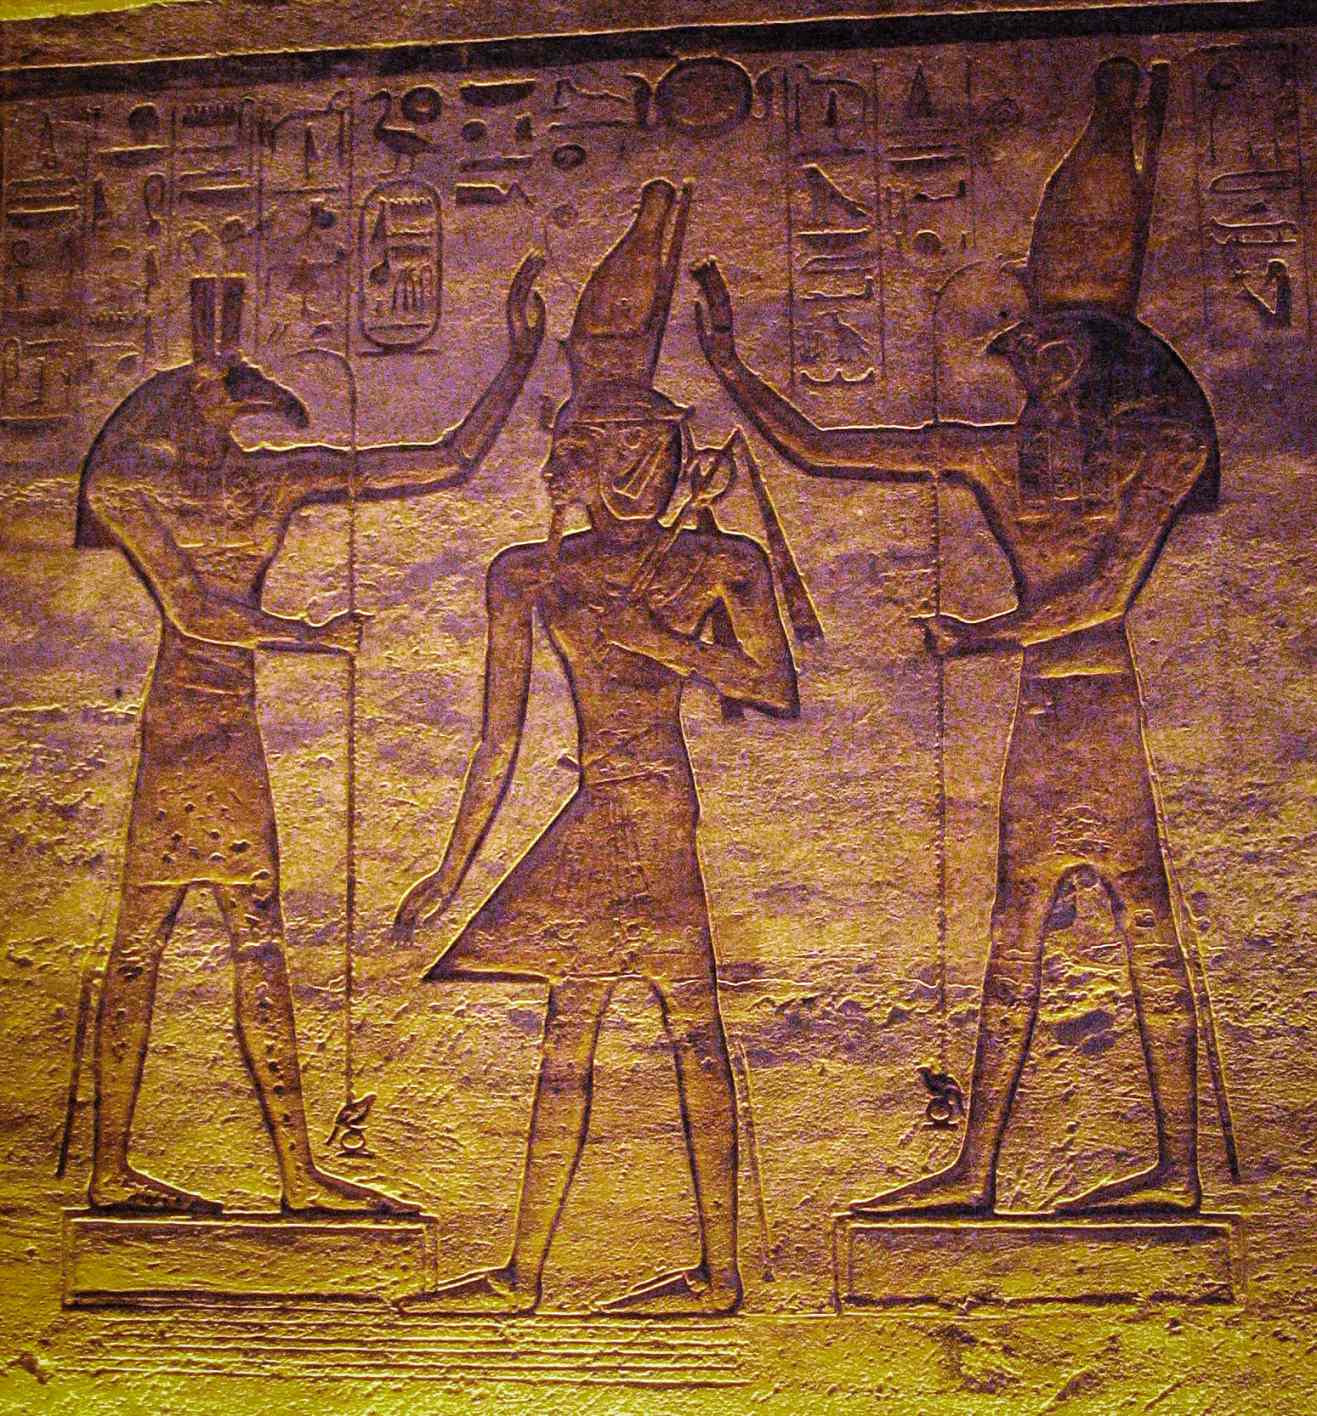 Set (Seth) a Horus zbožňujúci Ramessa. Súčasná štúdia ukazuje, že mesiac mohol byť reprezentovaný Sethom a premenná hviezda Algol Horom v káhirskom kalendári.